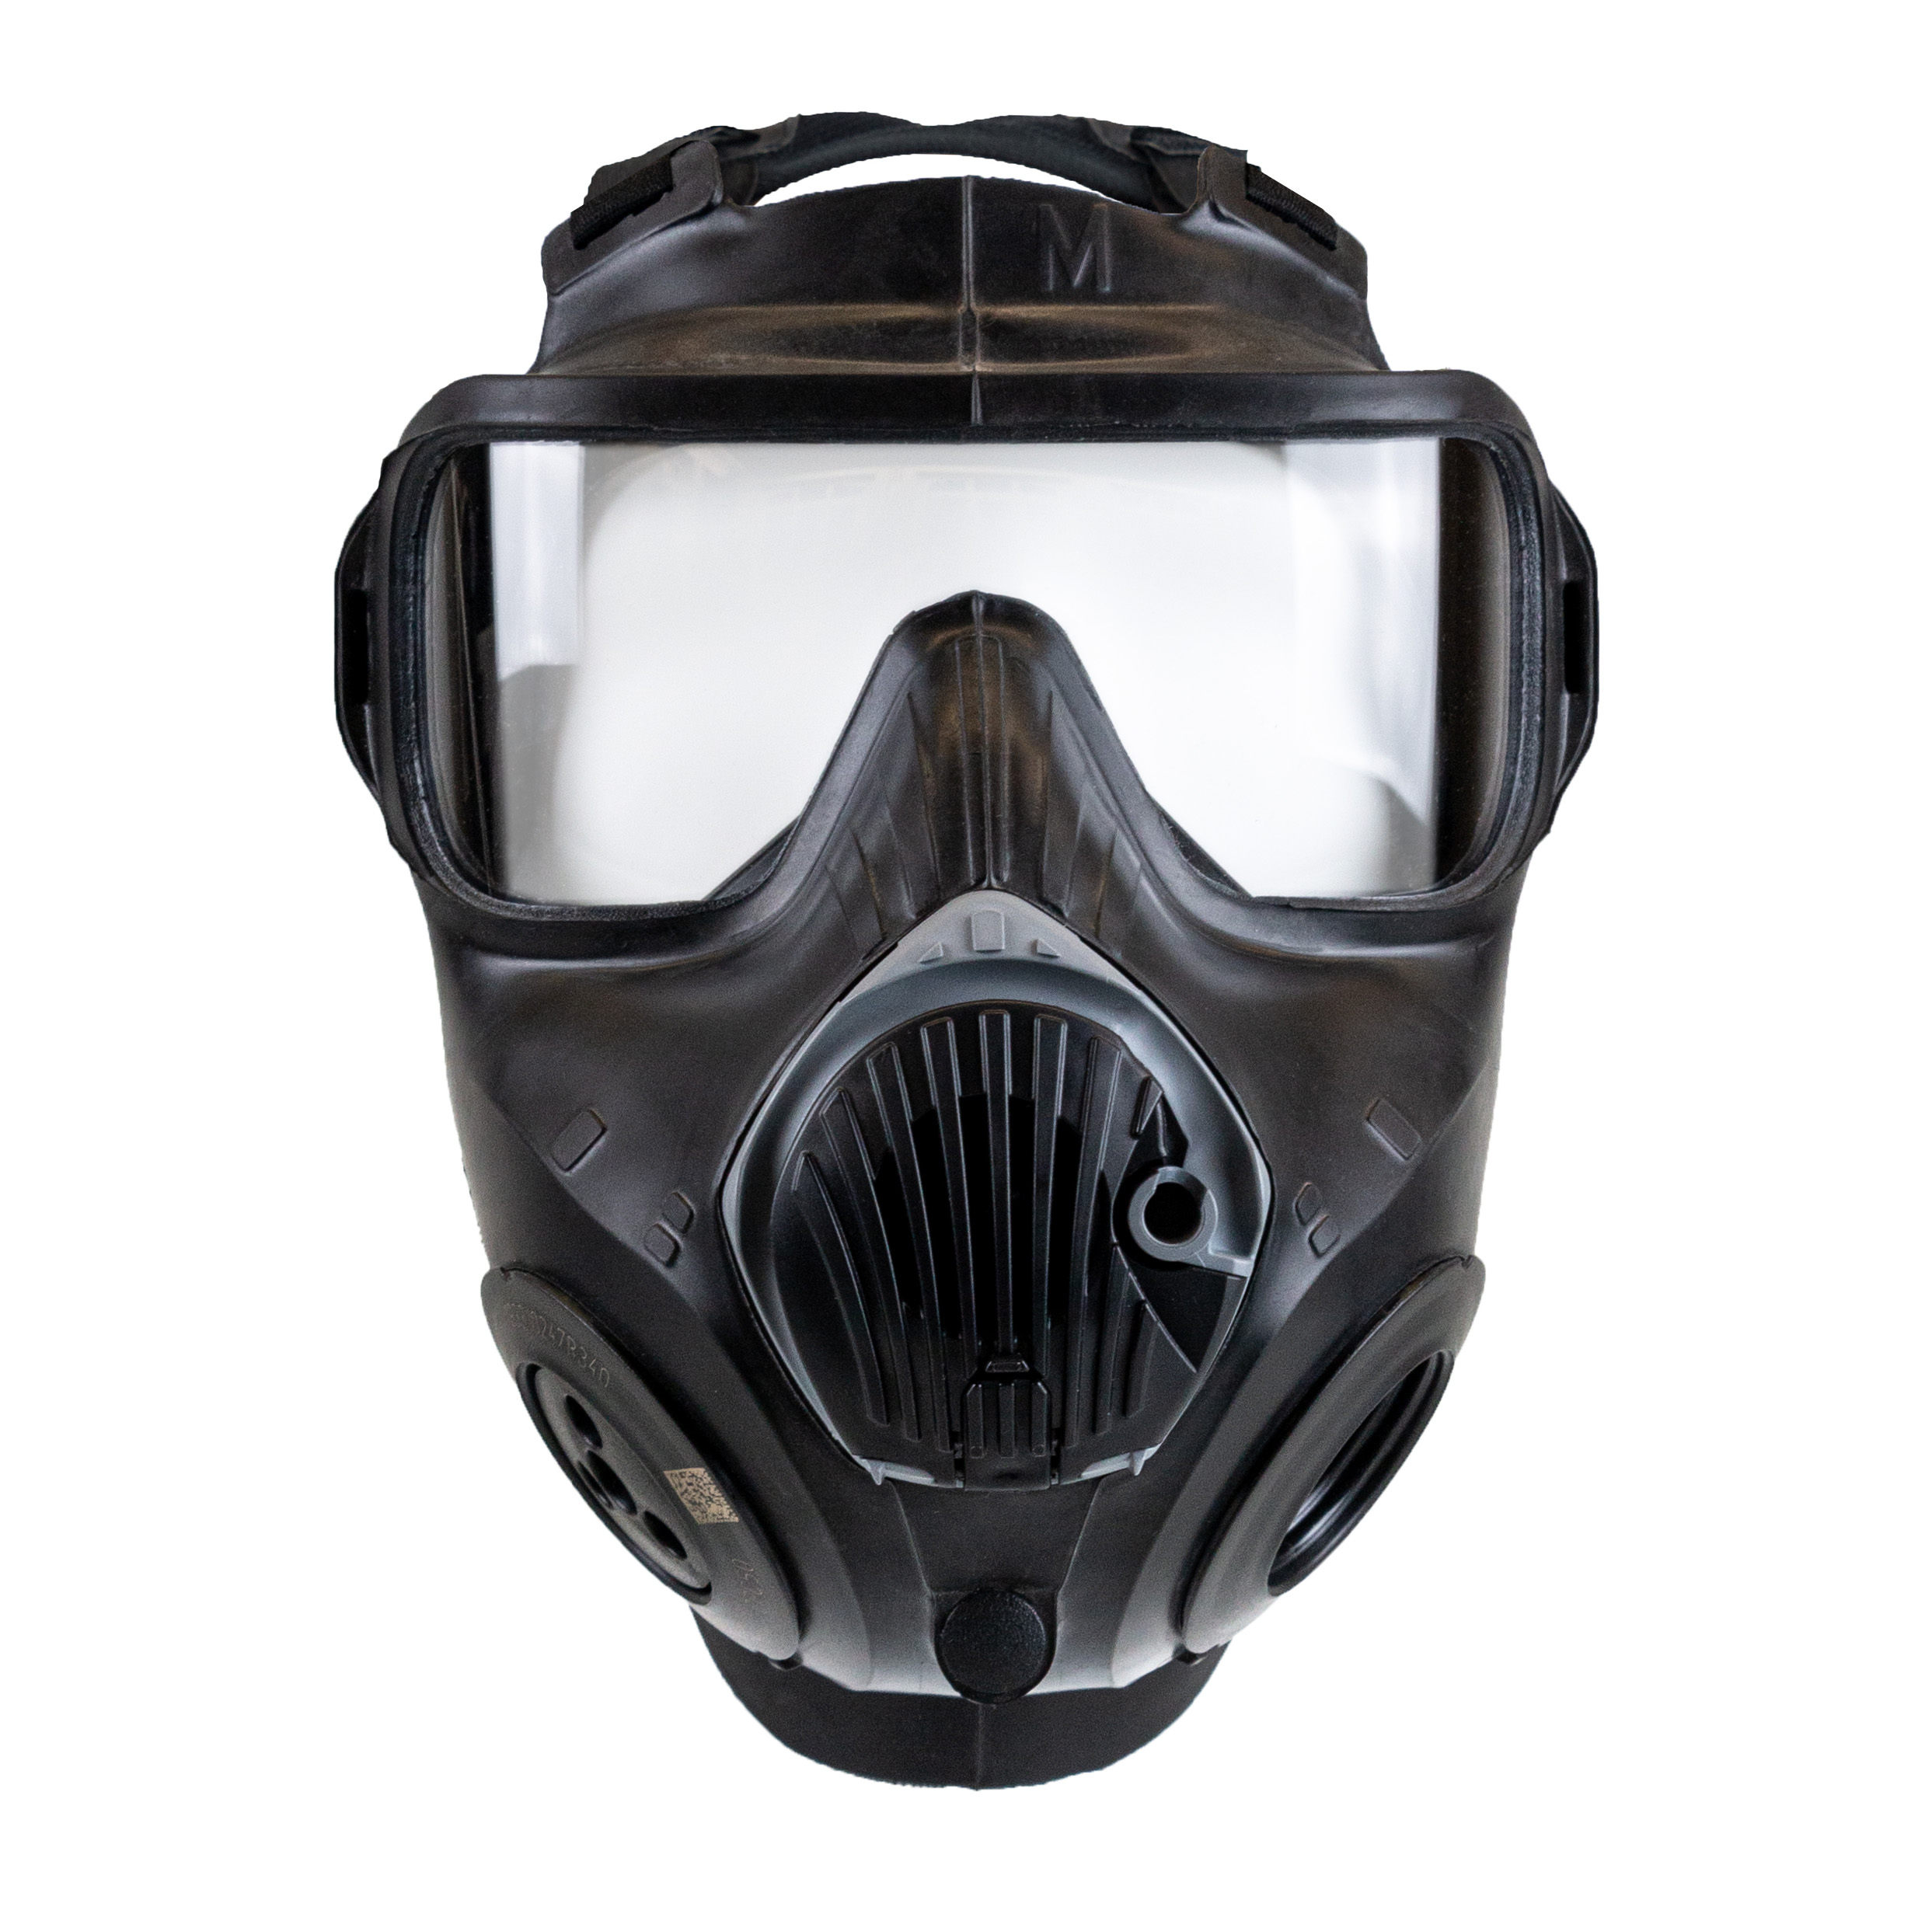 Masque Protection 18 in 1,Masque de Protection Respiratoire